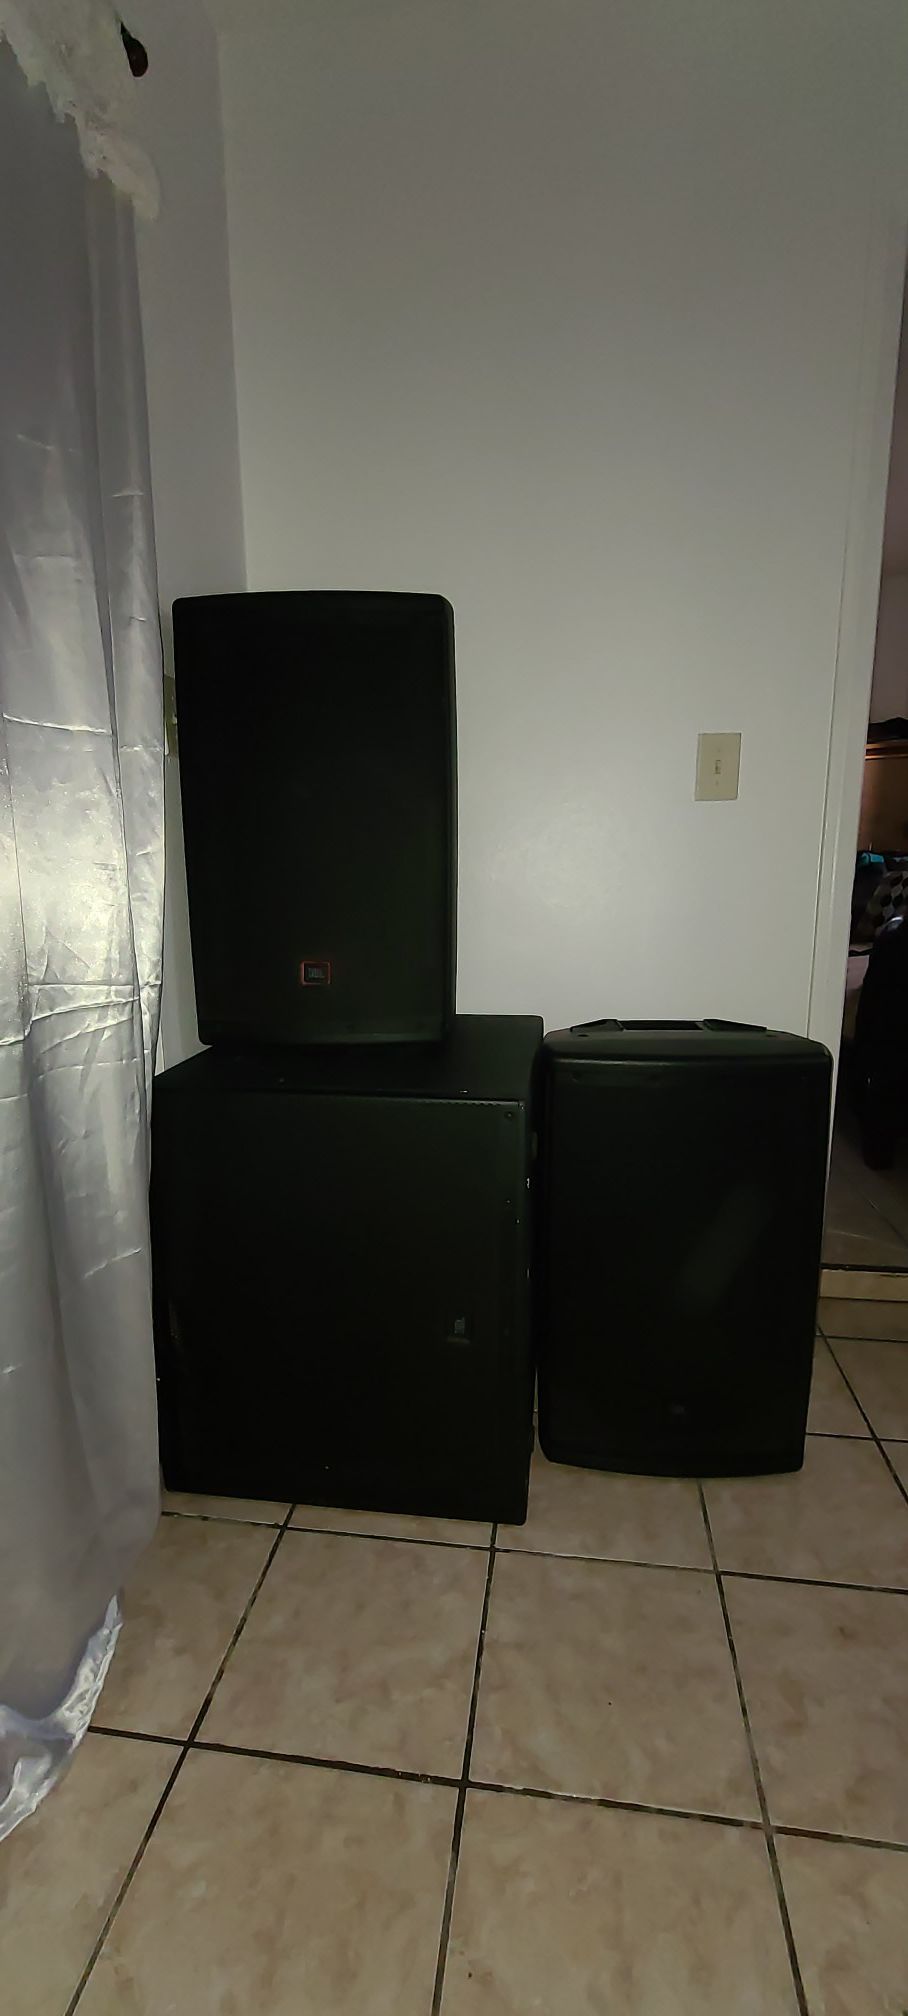 jbl speakers par 615 eon and subwoofer 618e ( set )